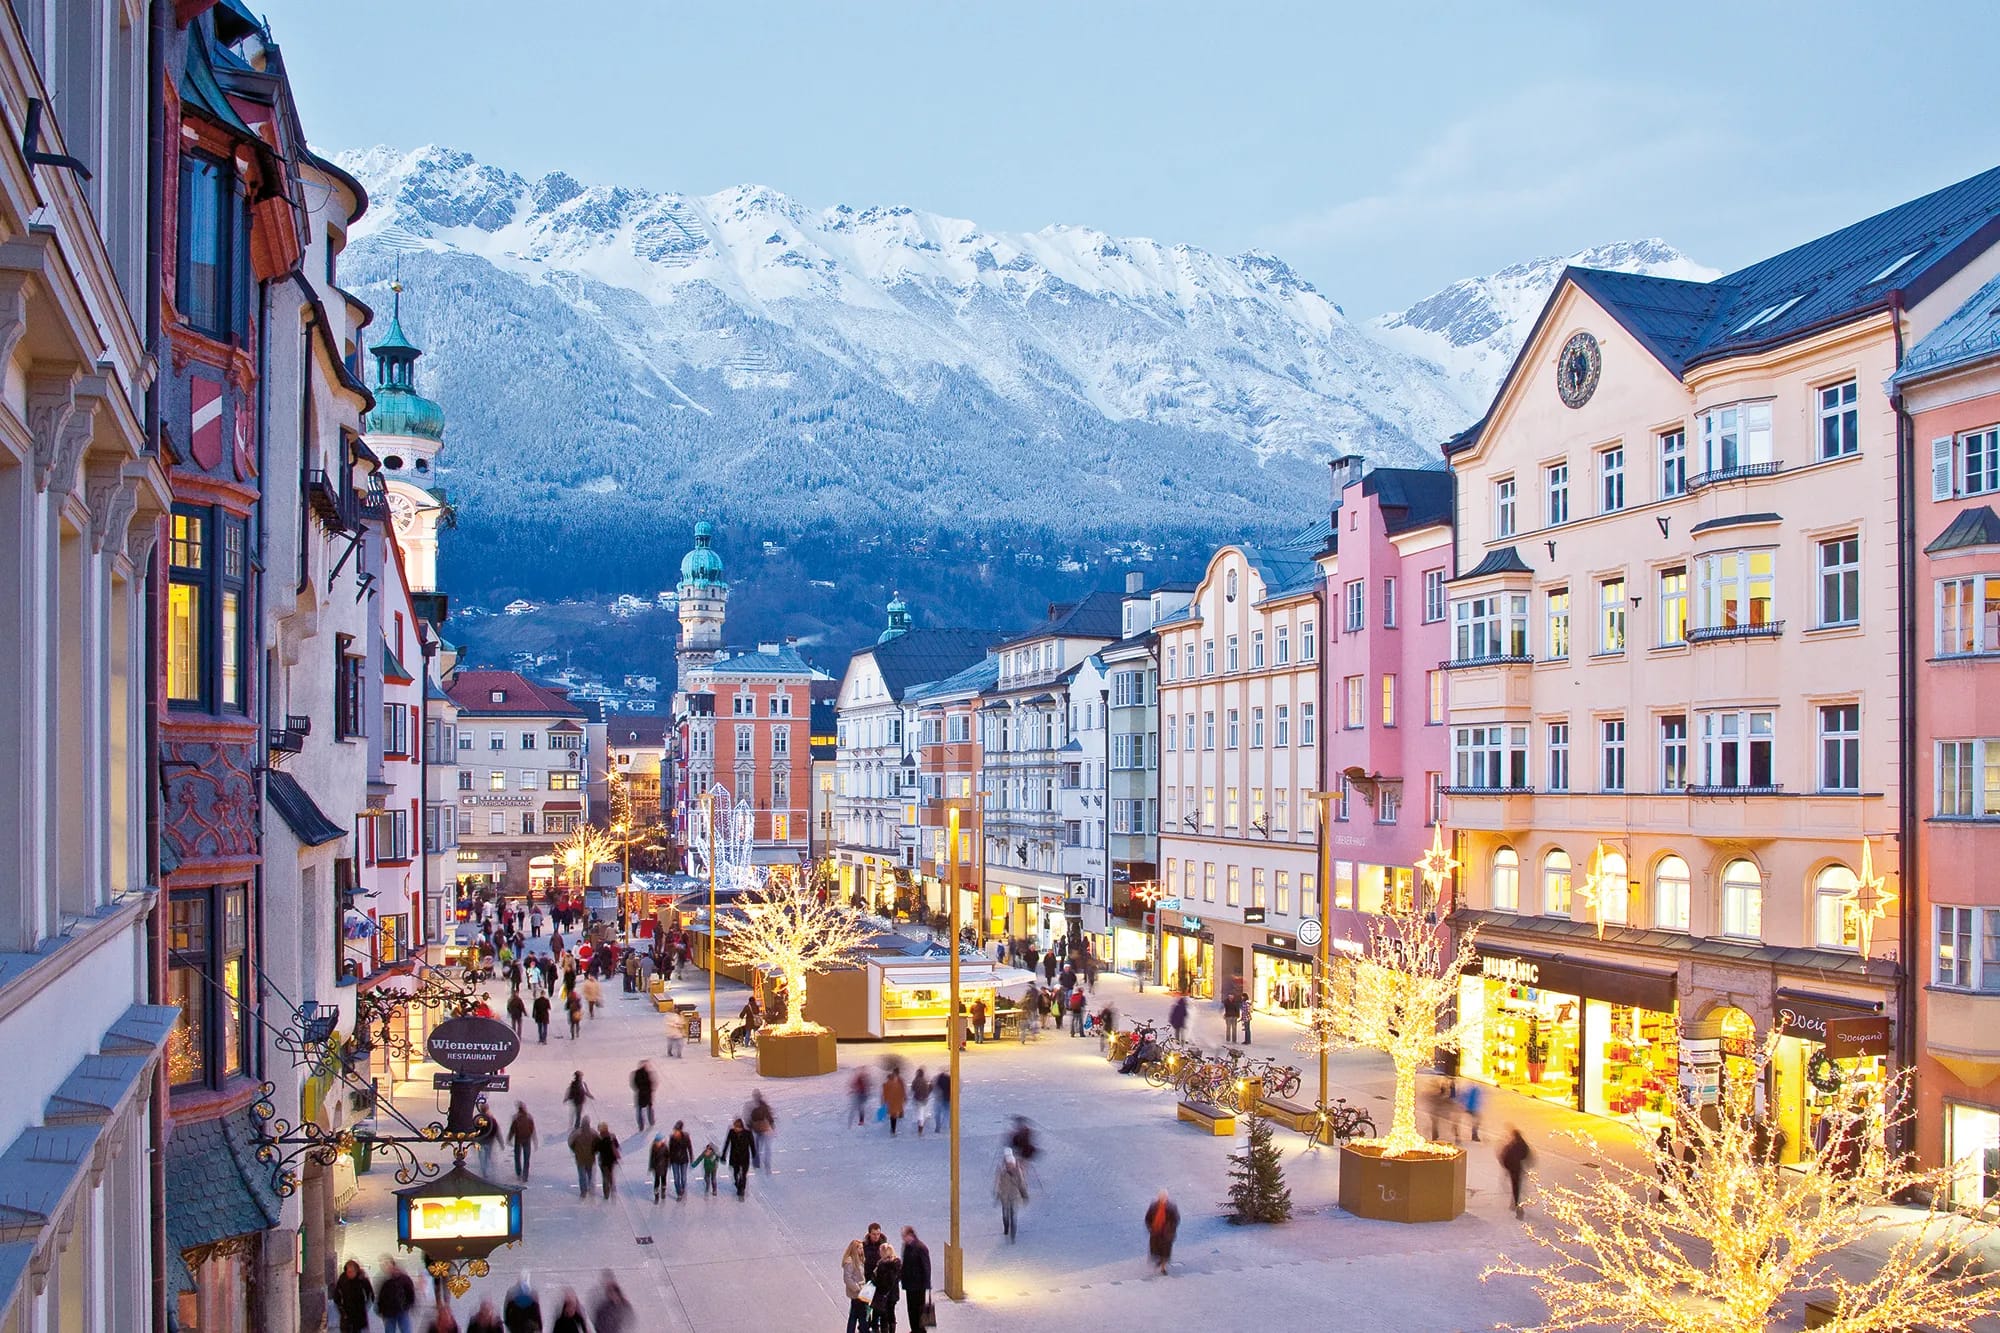 Innsbruck and the Austrian Alps